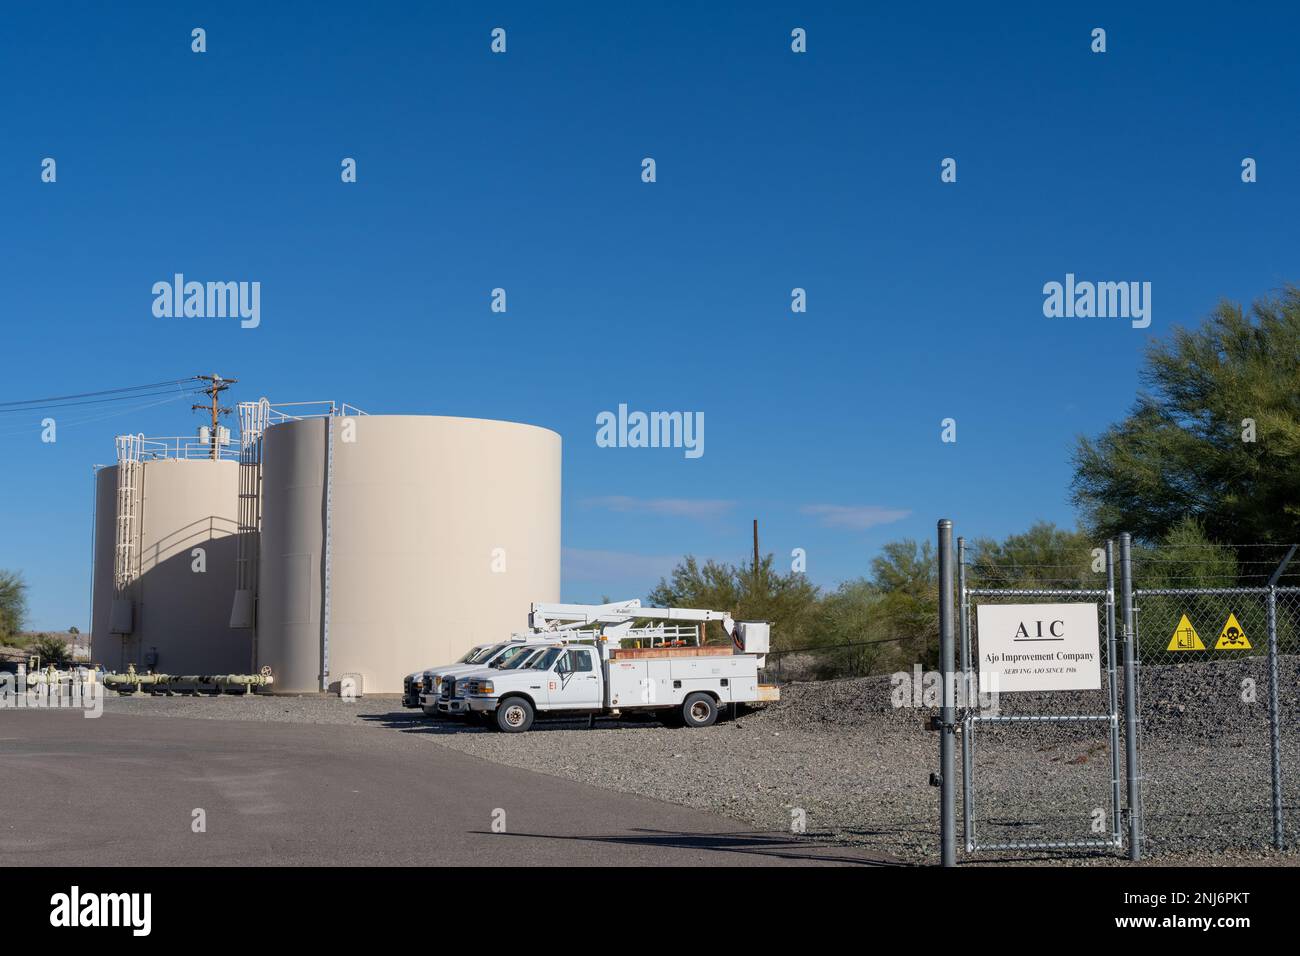 Ajo, AZ - Nov. 28, 2022: Ajo Improvement Company is a utility company providing public services for Ajo residents. Stock Photo